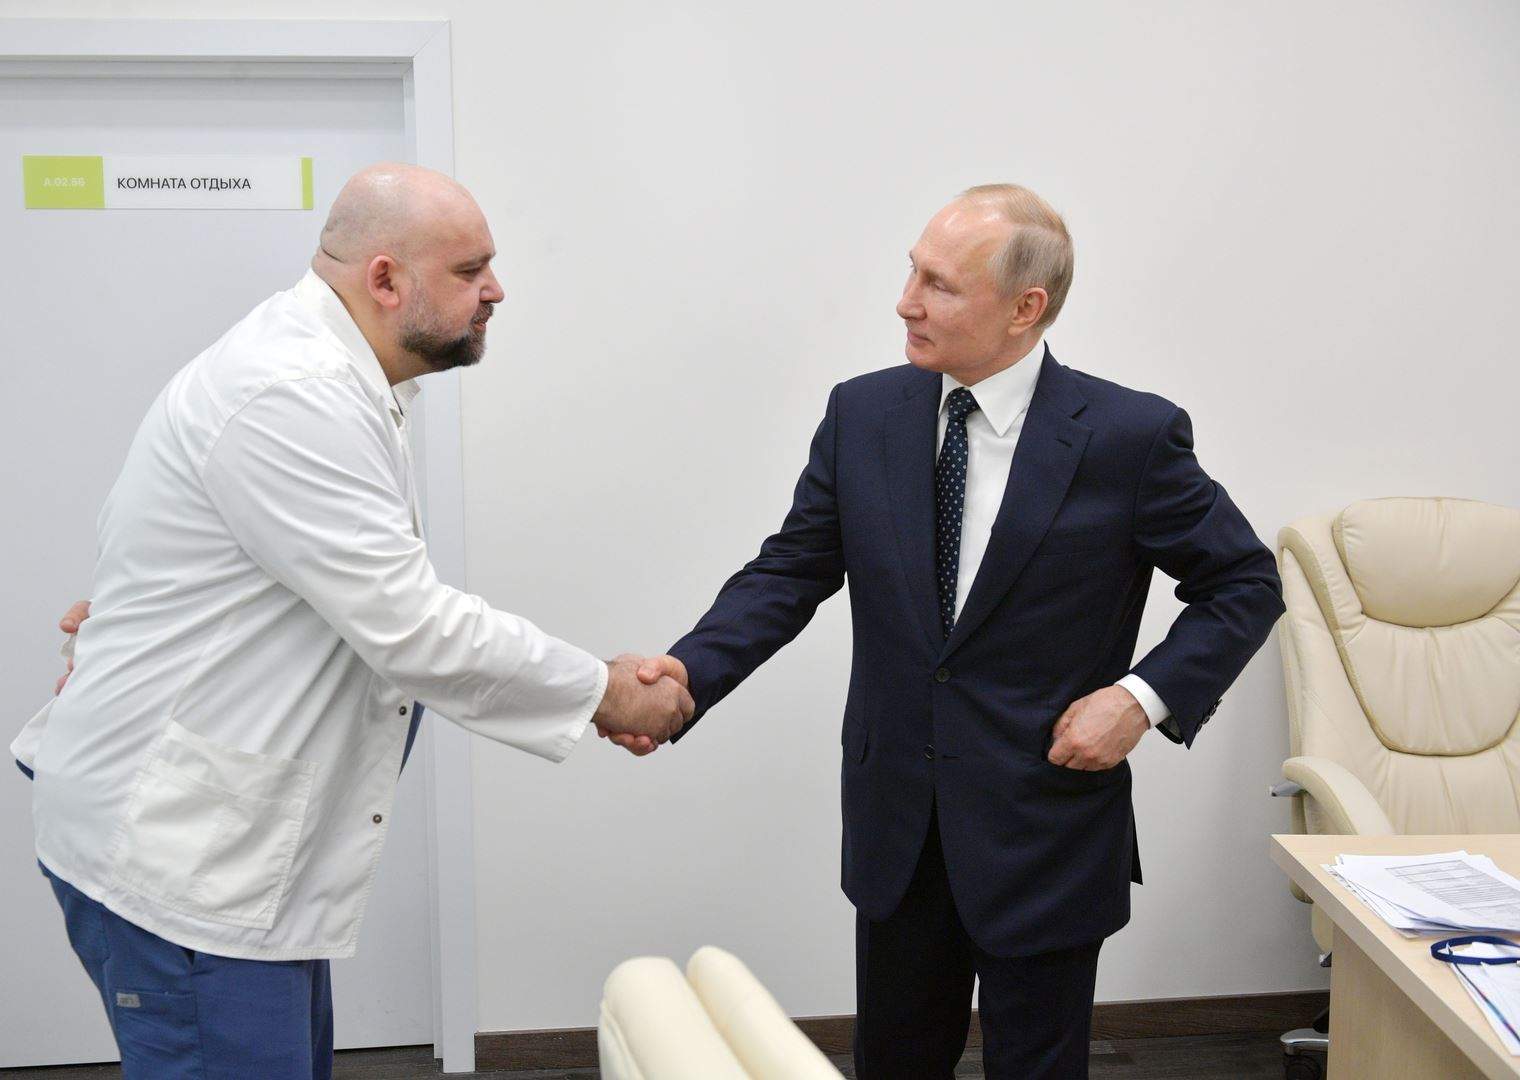  مدير مستشفى رافق بوتين في زيارته للمرضى مصاب بـ"كورونا"